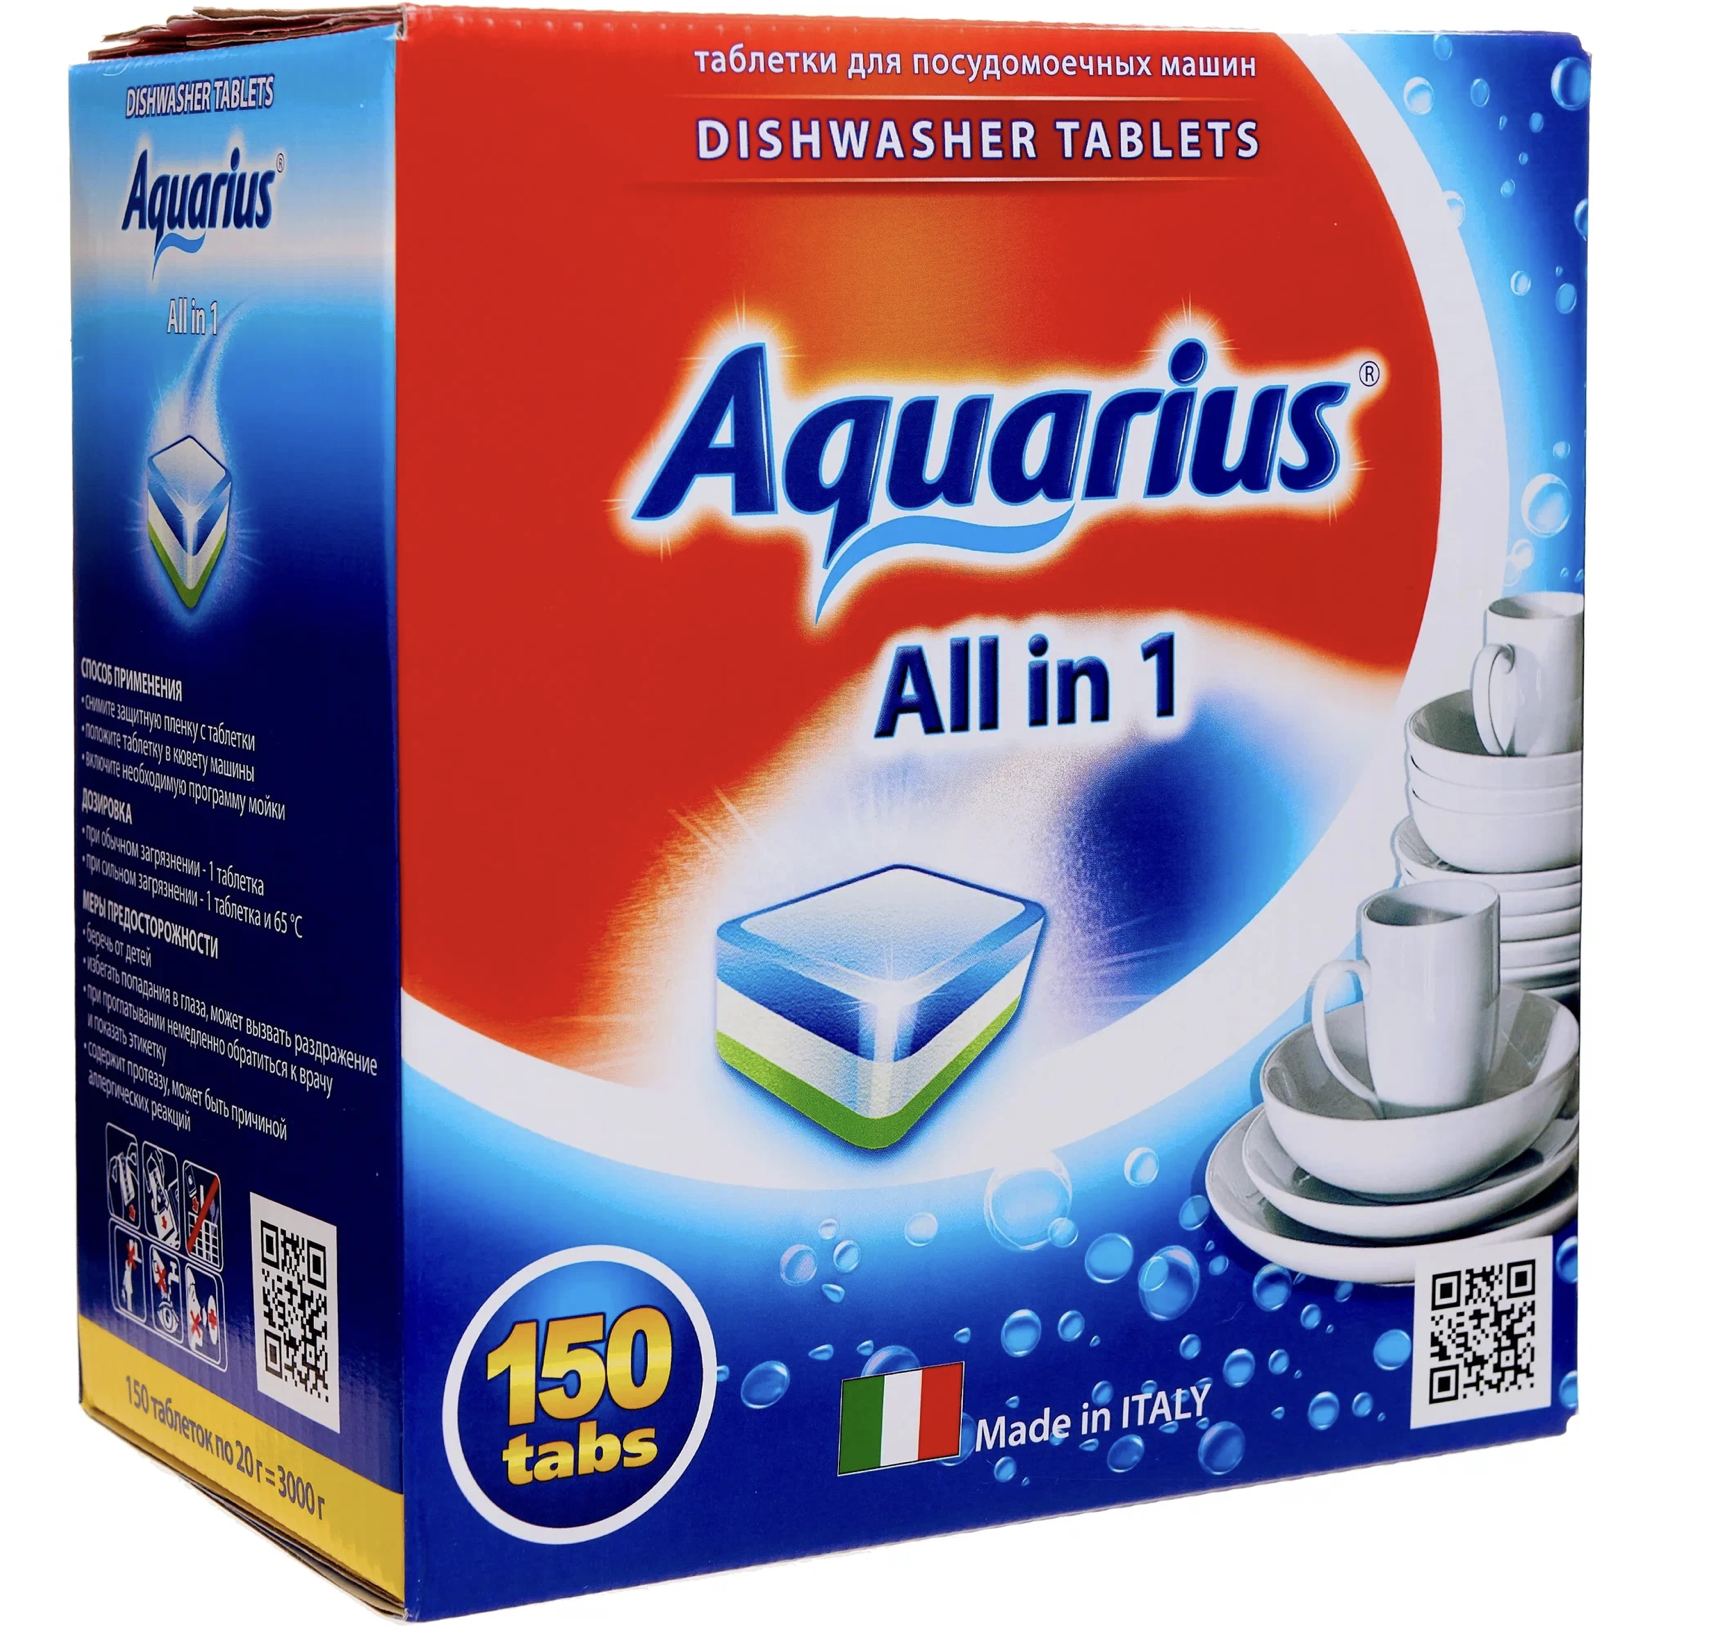   / Aquarius -     All in 1, 150 